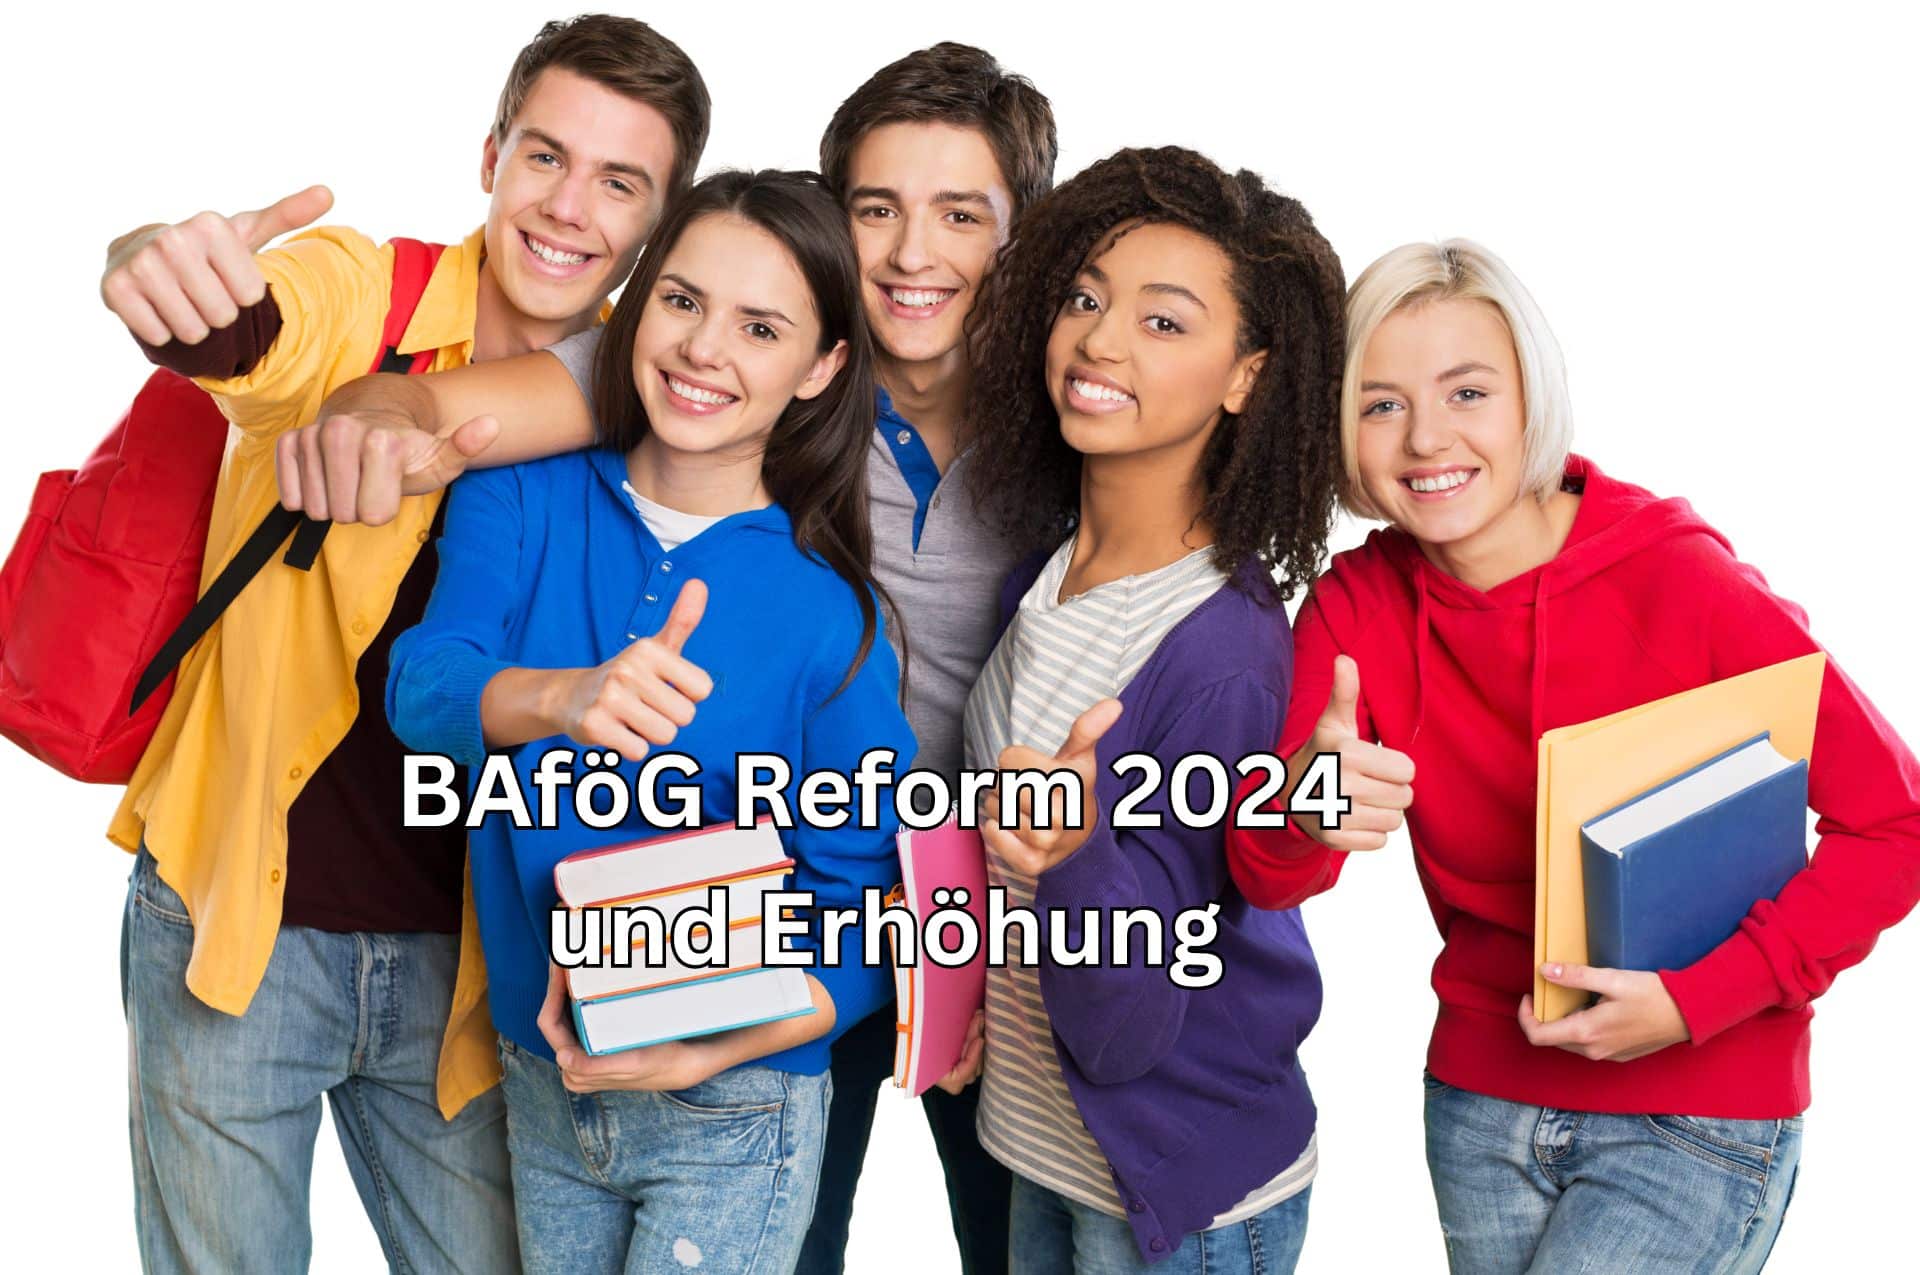 Bafög Reform 2024 beschlossen – Erhöhung wie beim Bürgergeld um 12 Prozent?